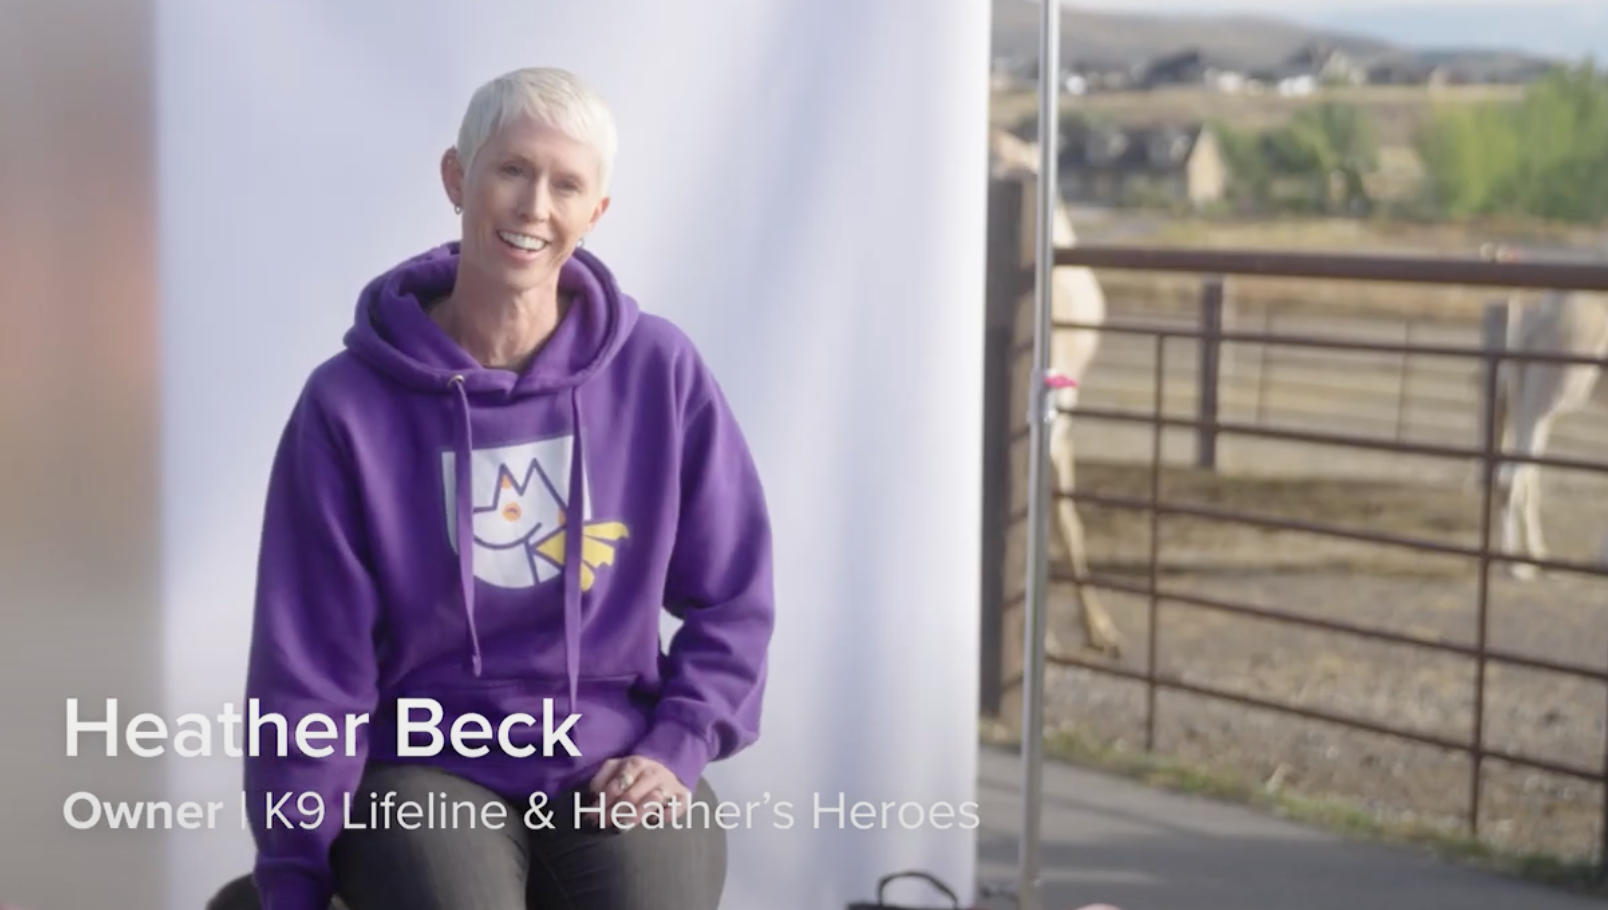 Heather Beck
Owner | K9 Lifeline & Heather's Heroes